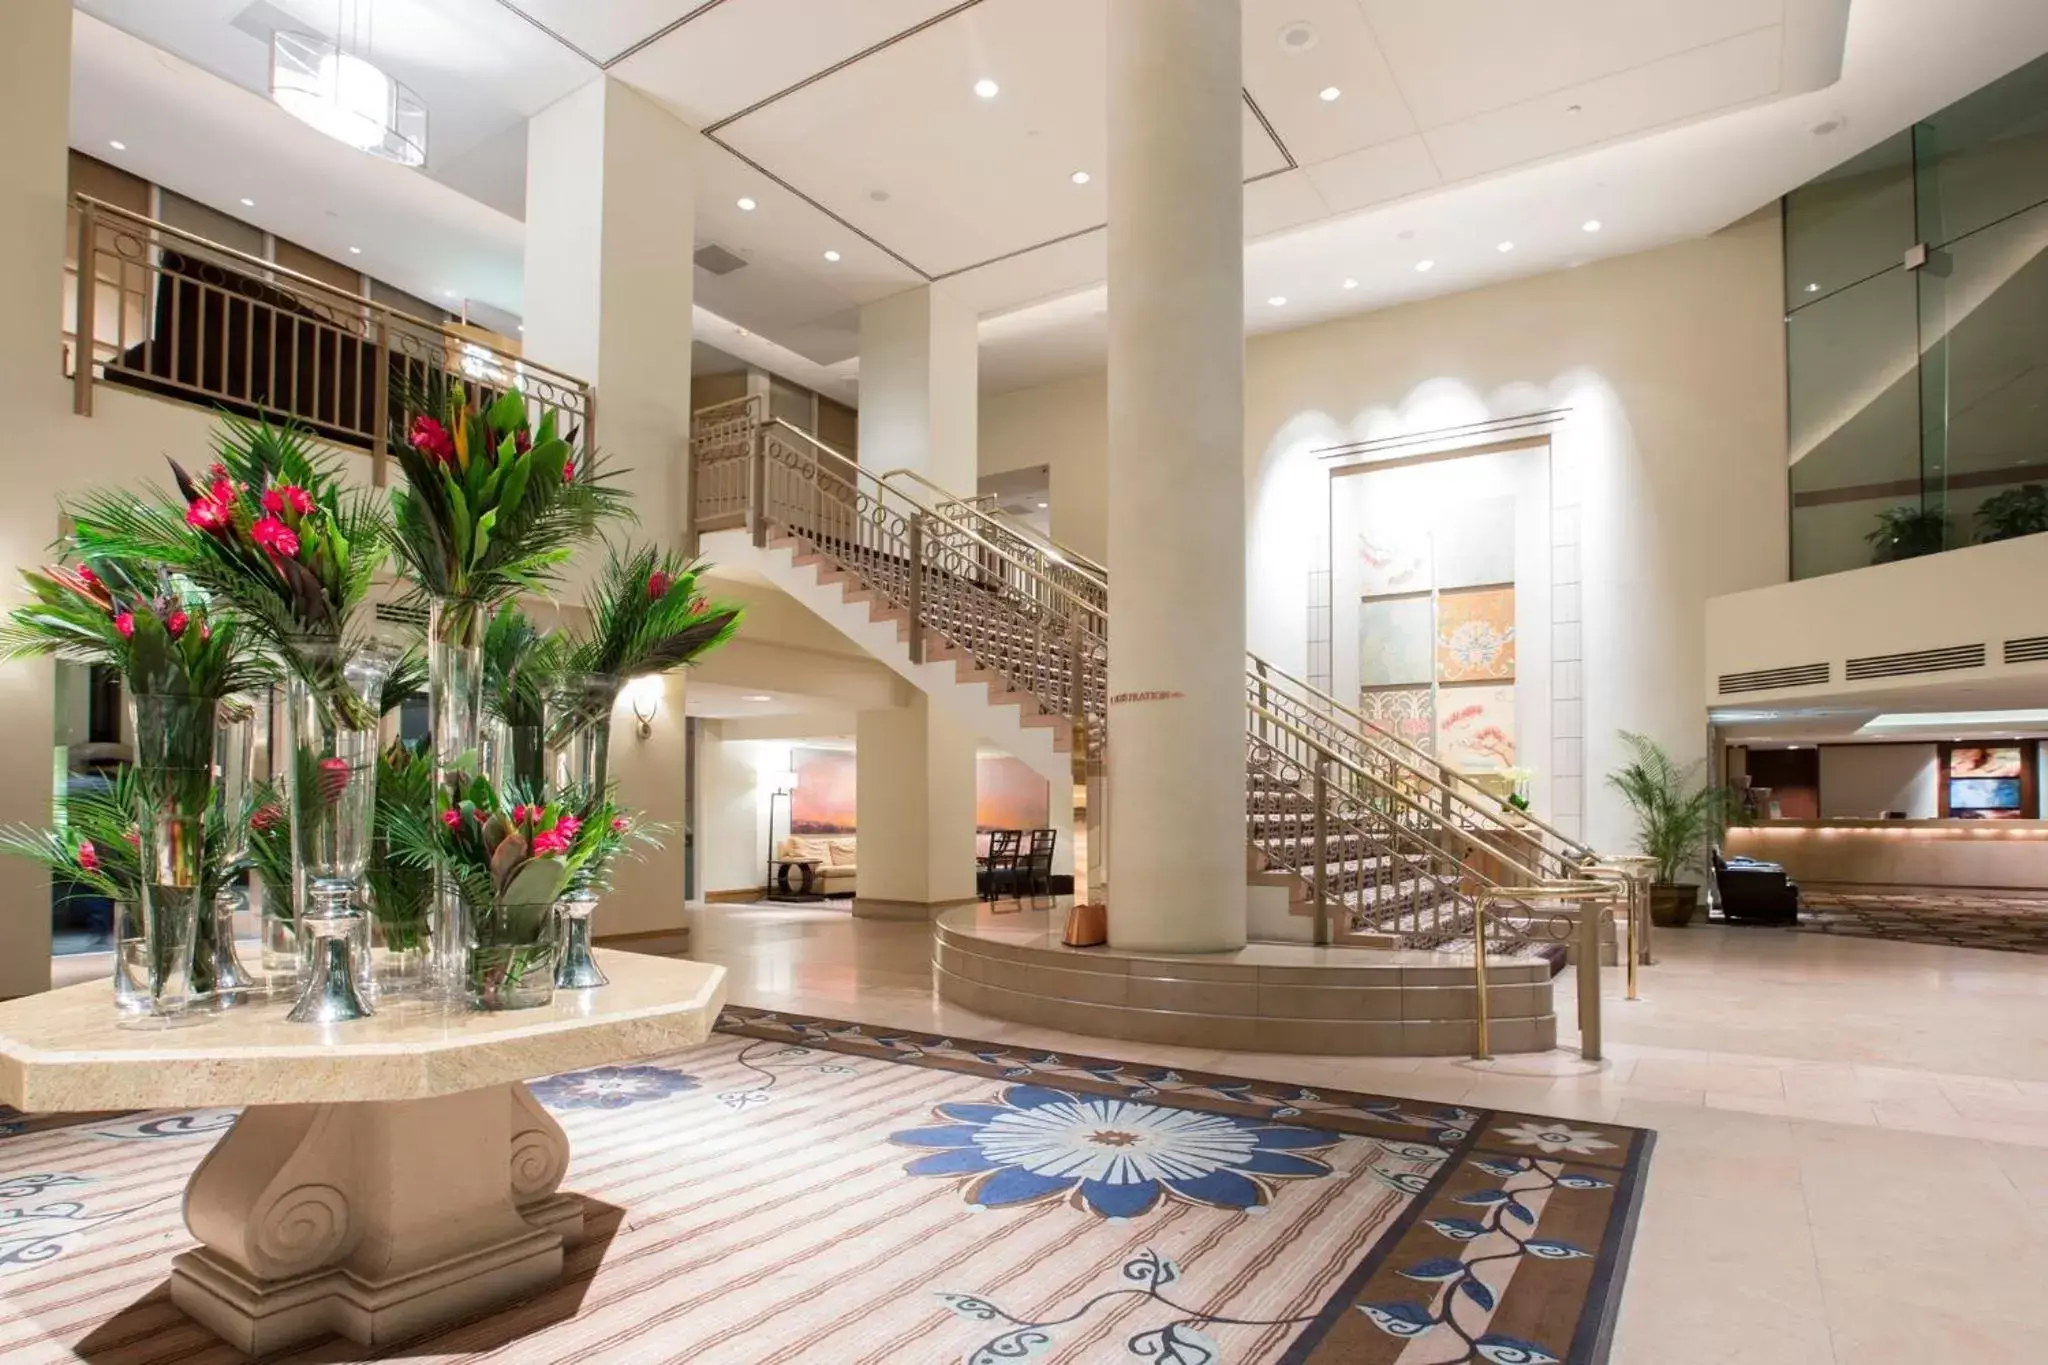 Lobby or reception, Lobby/Reception in Omni Los Angeles Hotel